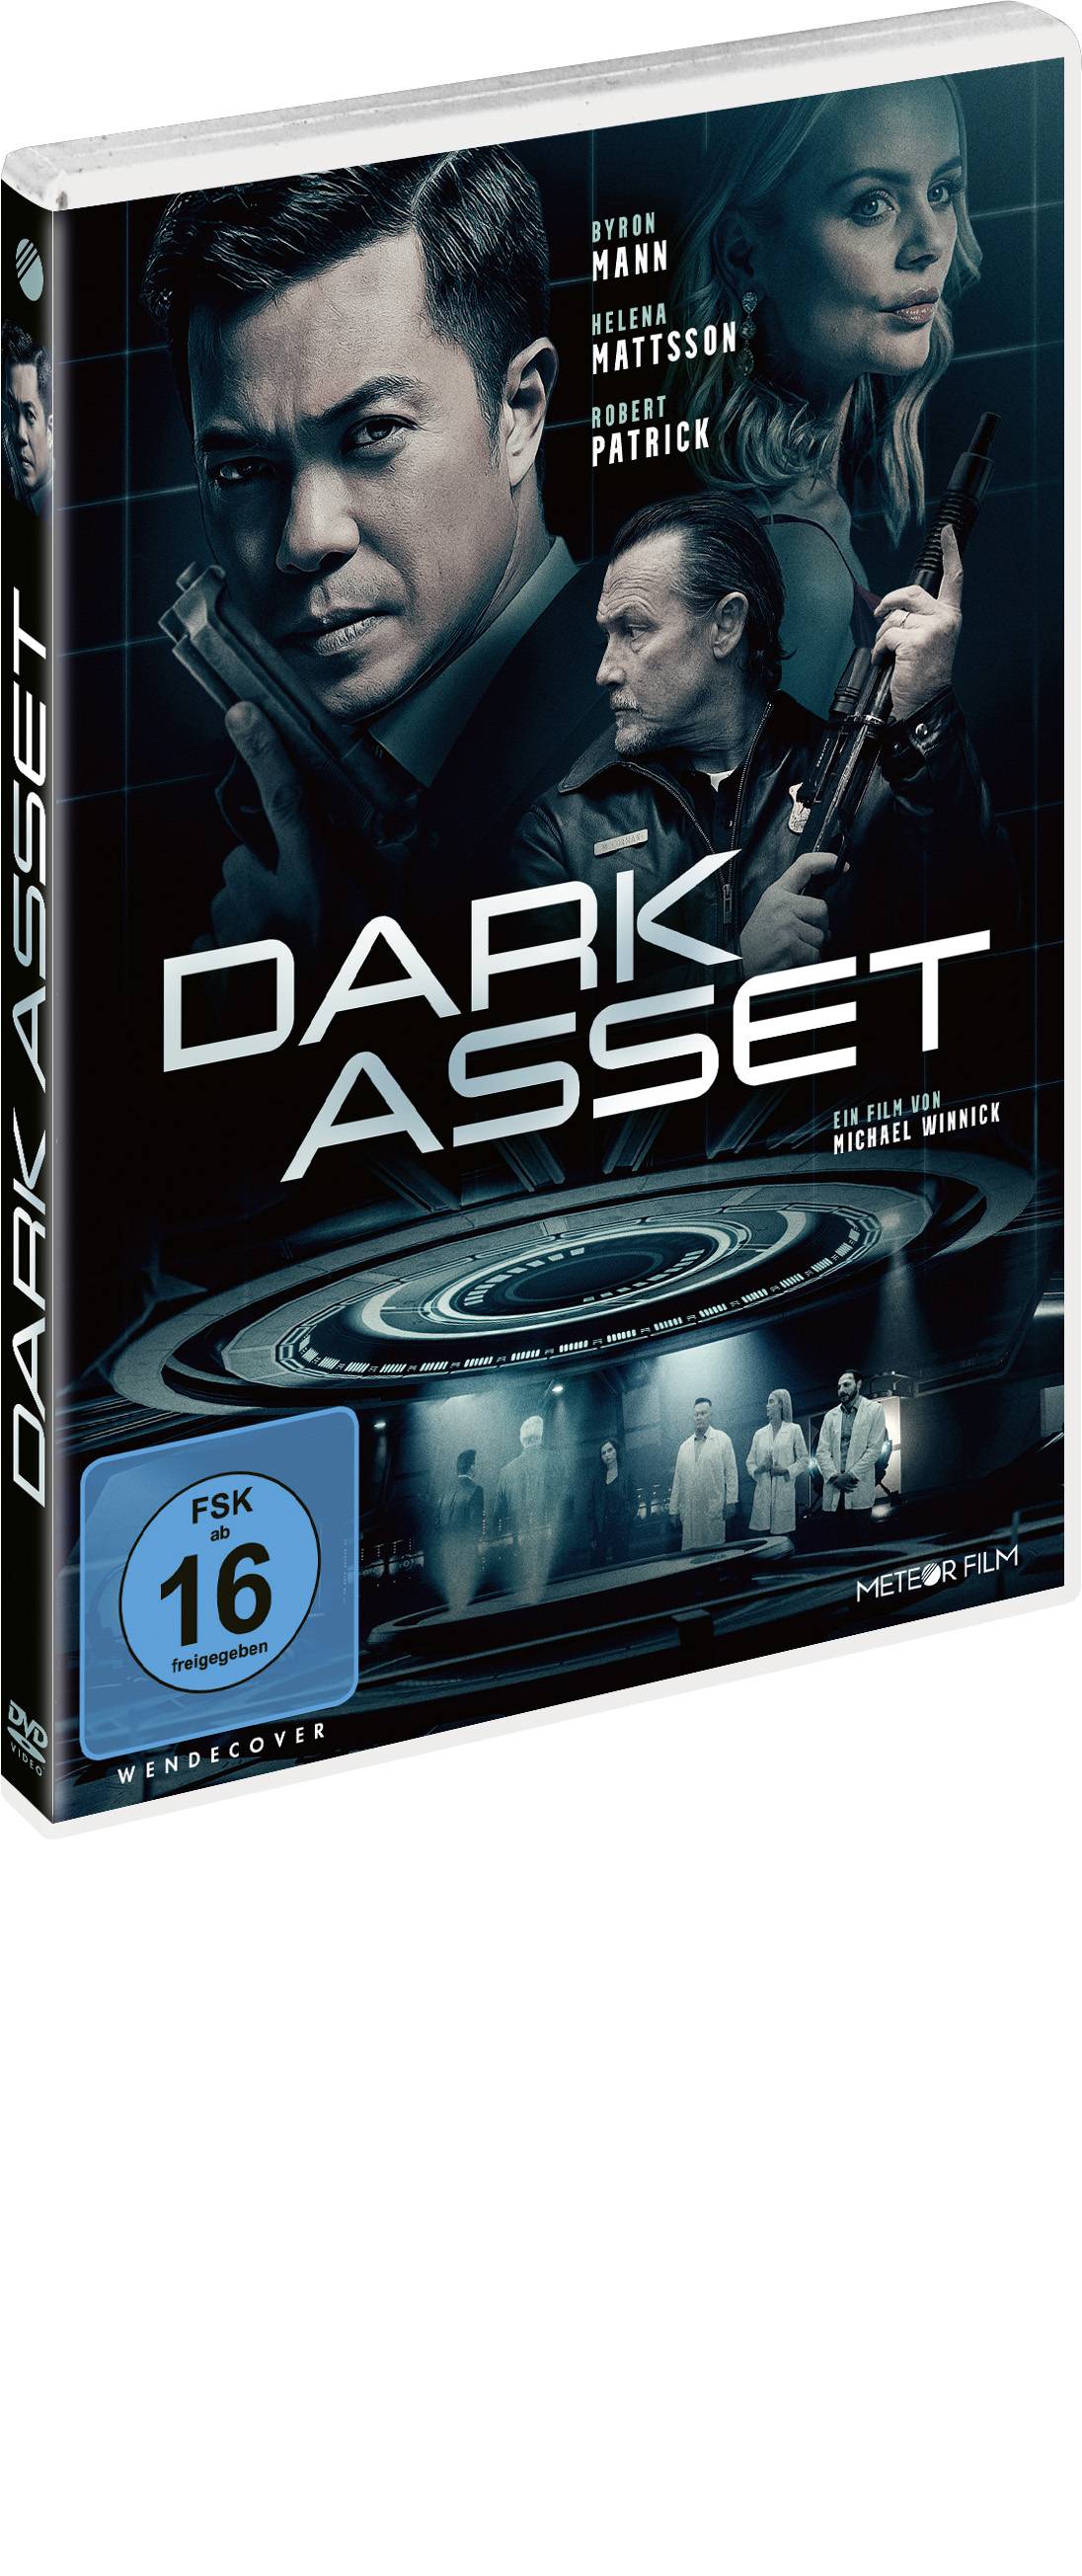 Dark Asset